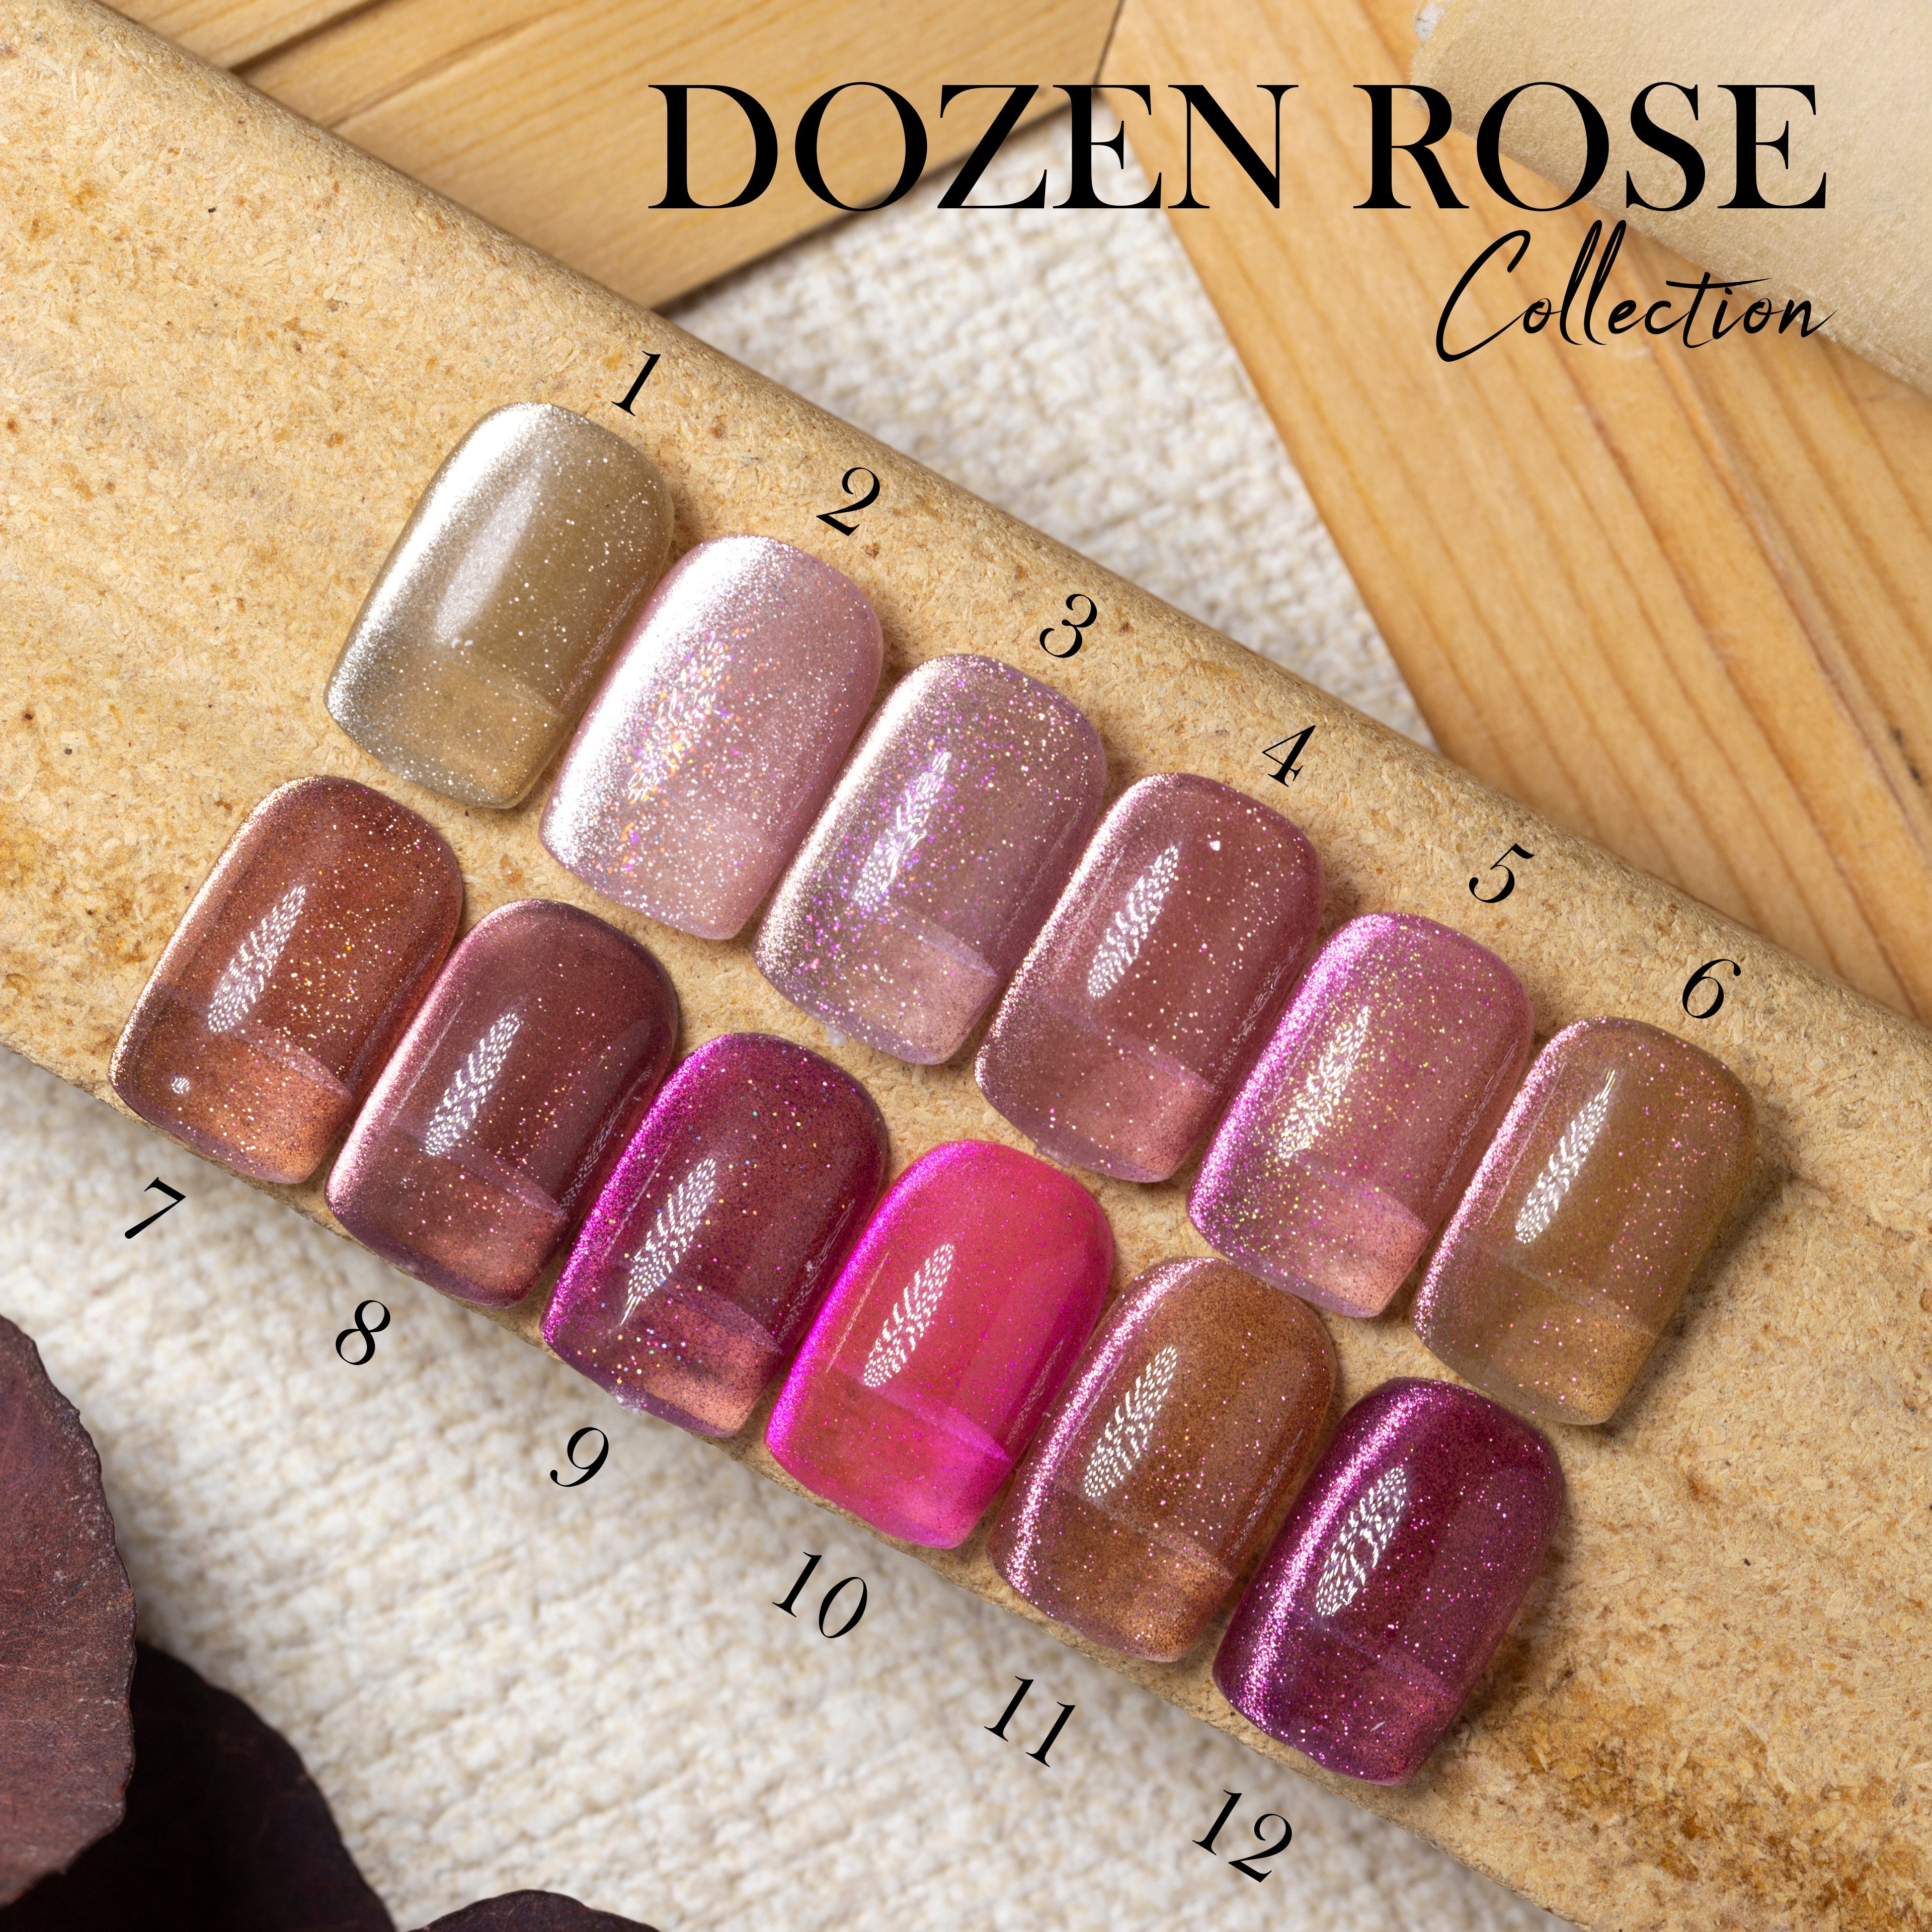 LDS DR 12 Colors - Gel Polish 0.5 oz - Dozen Rose CollectionLDS DR 12 Colors - Gel Polish 0.5 oz - Dozen Rose Collection